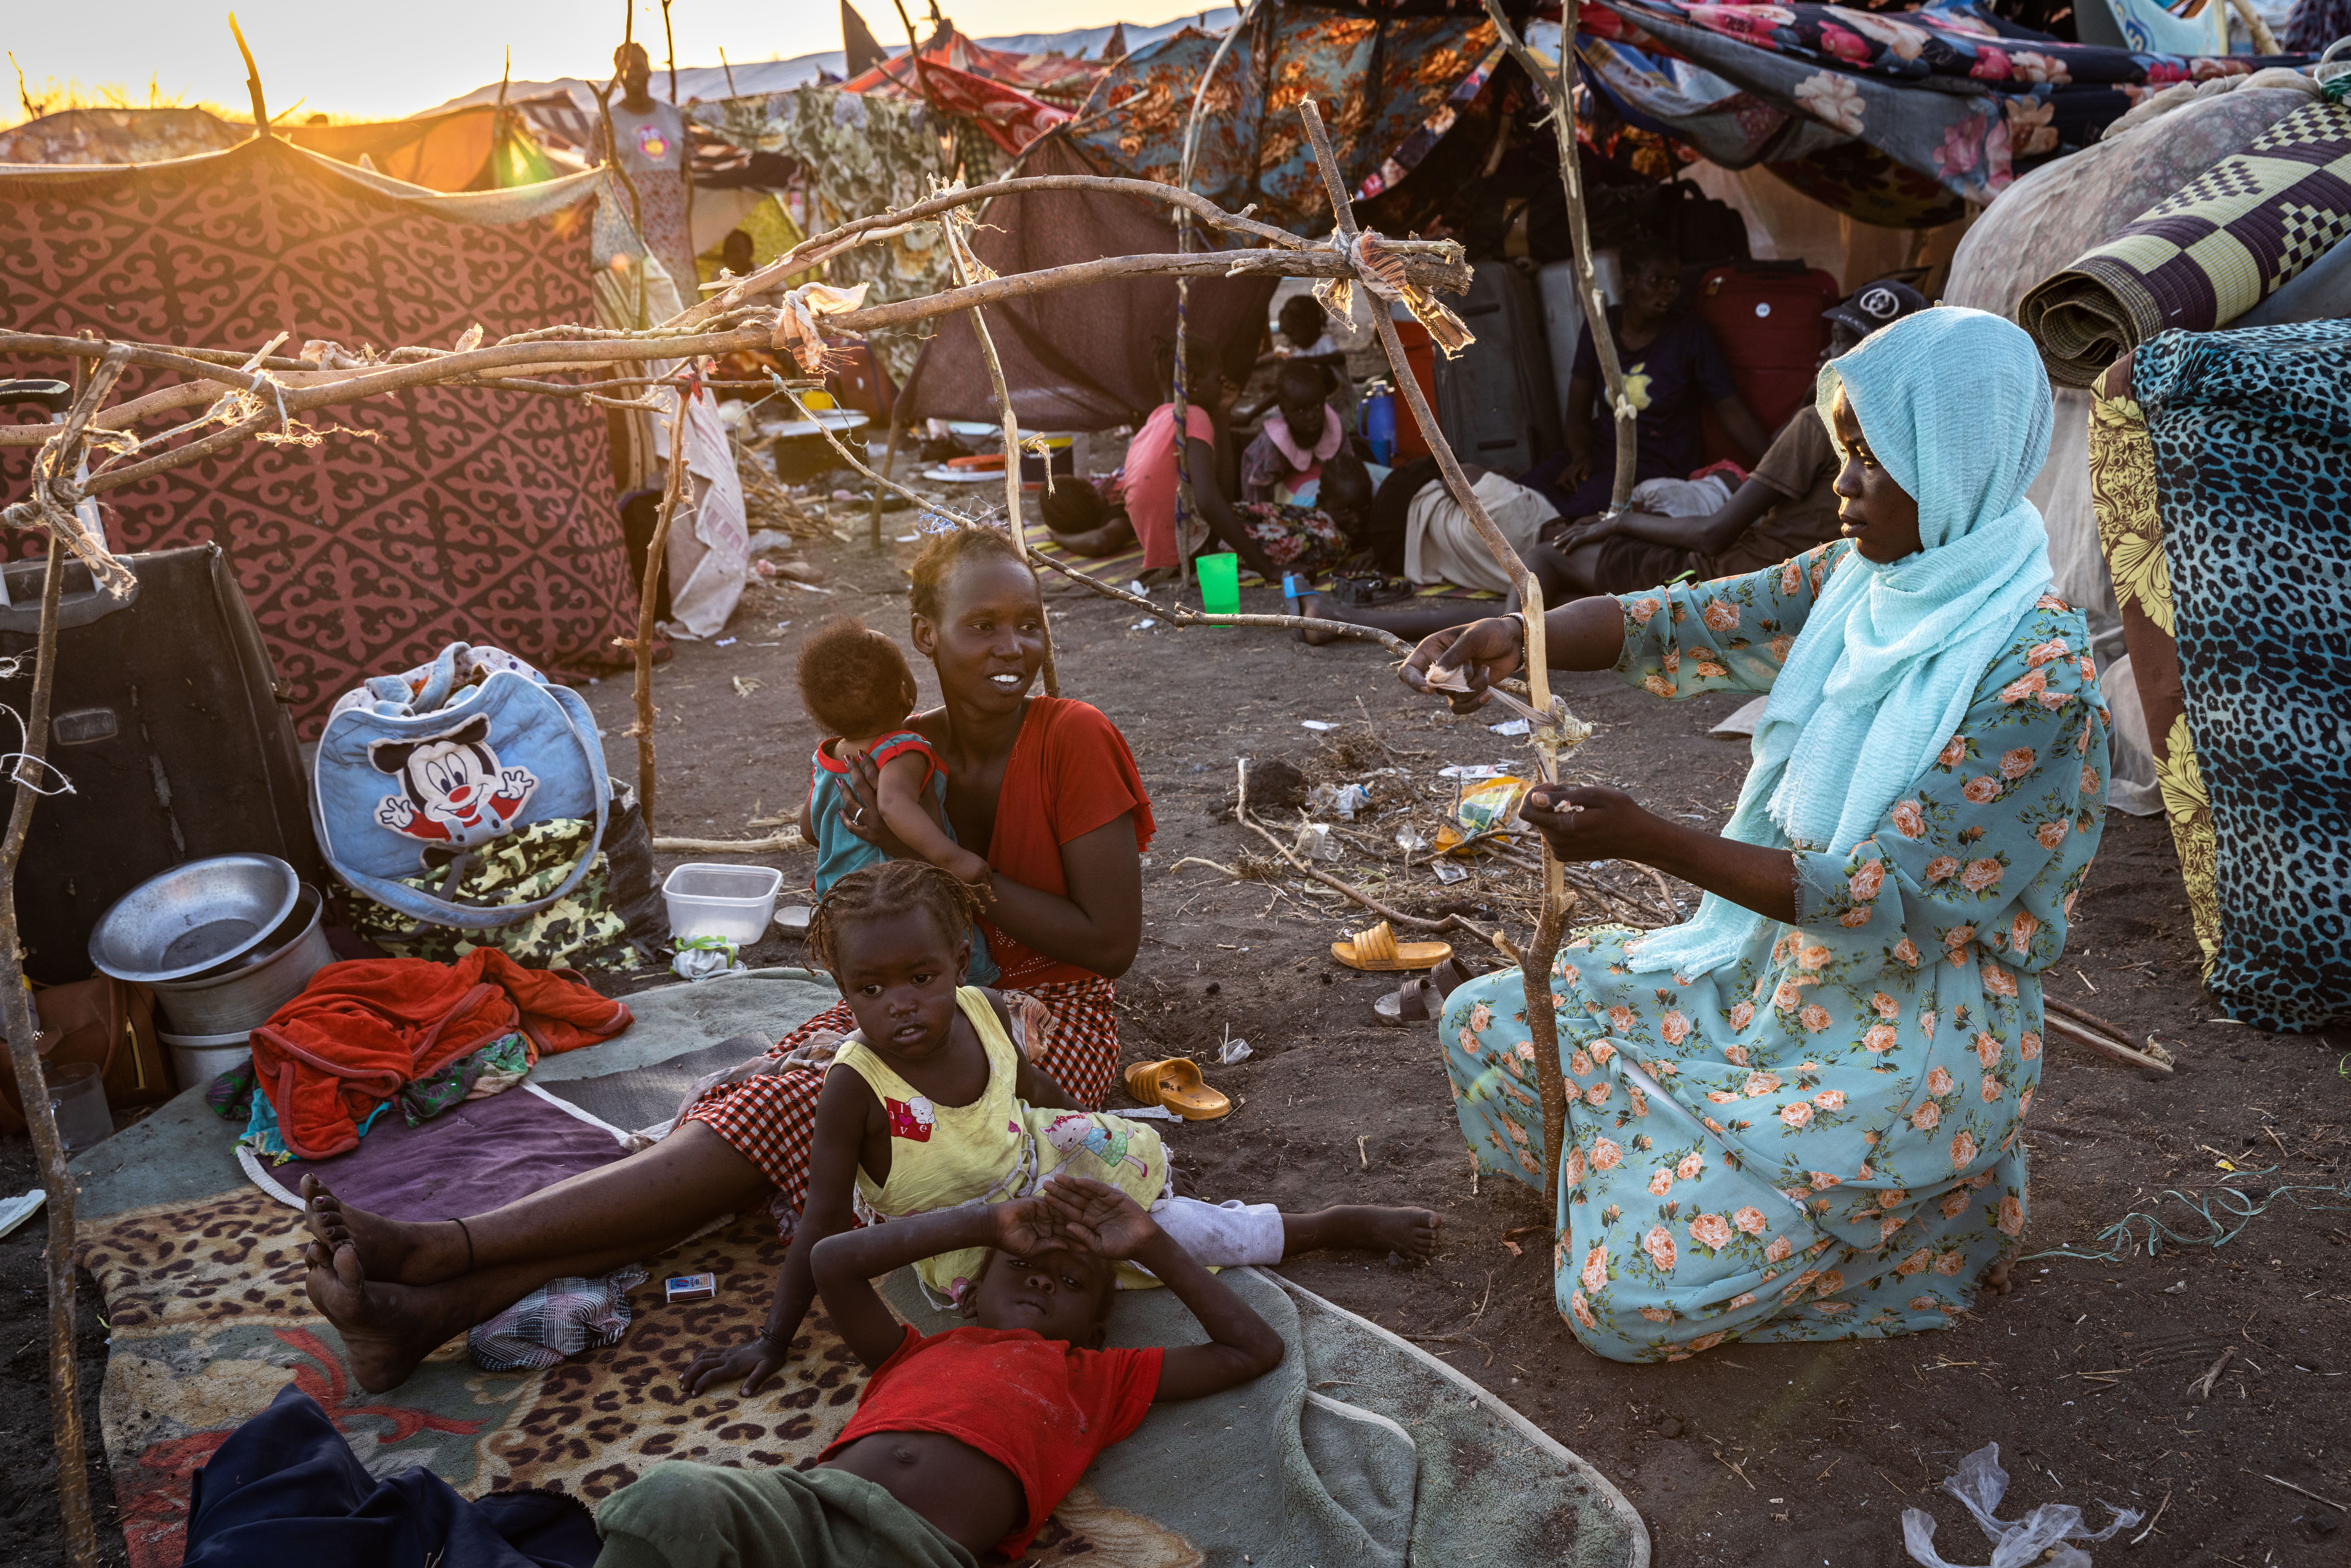 Recém-regressada do Sudão, Eliza (de top vermelho) é ajudada por um vizinho a construir um abrigo no centro de trânsito do ACNUR perto da fronteira em Renk. Eliza planeia regressar a Bentiu, de onde fugiu em 2013